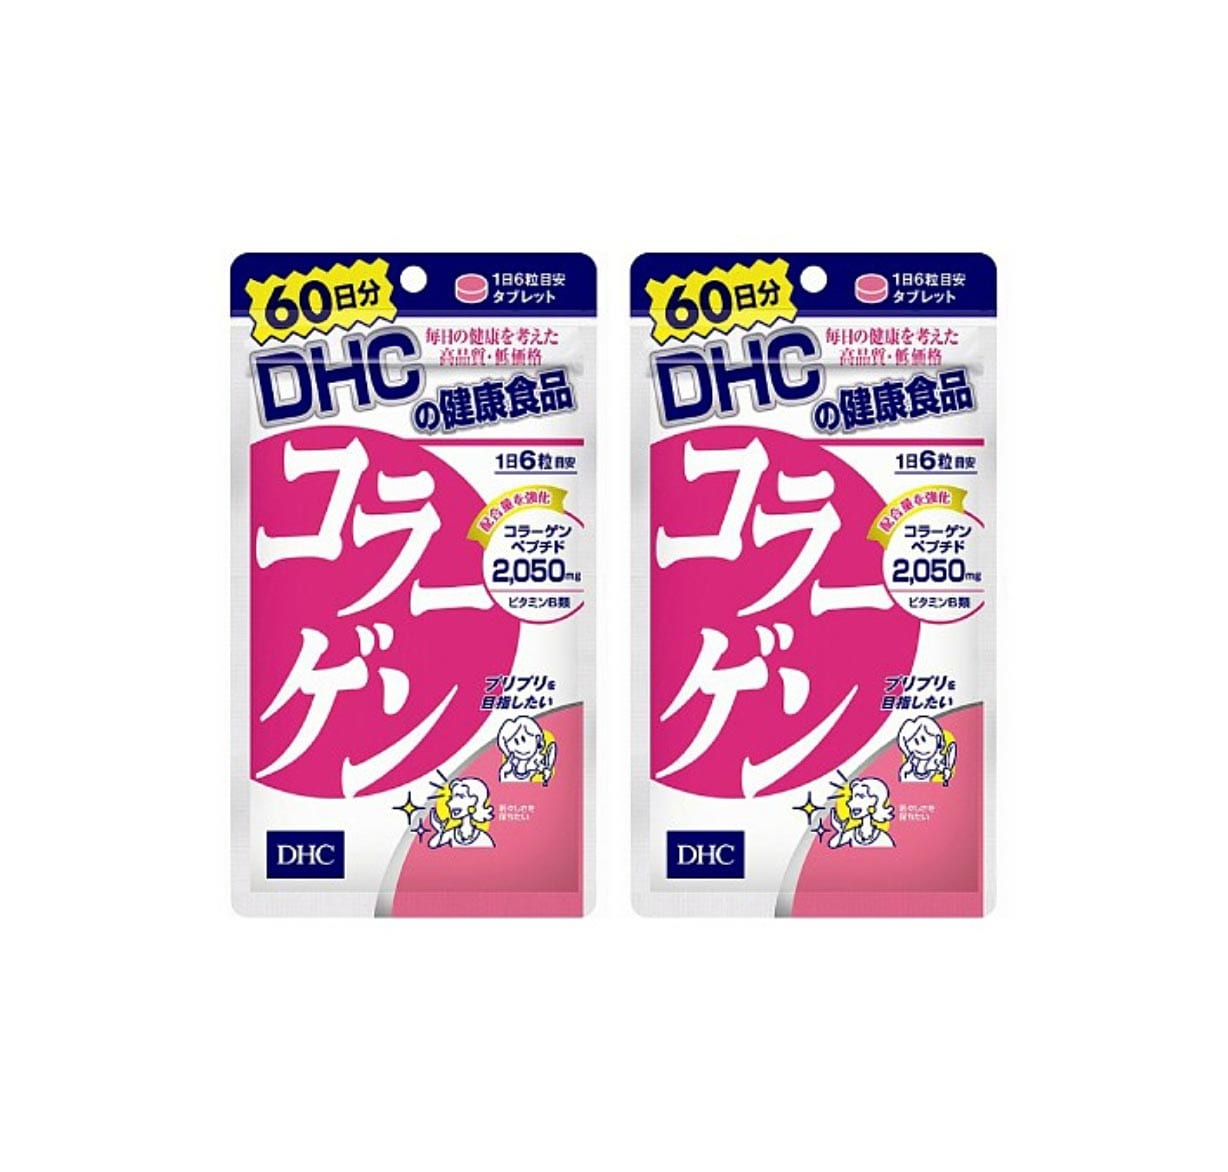 Viên Uống Collagen DHC Dạng Viên Chính Hãng Nhật Bản